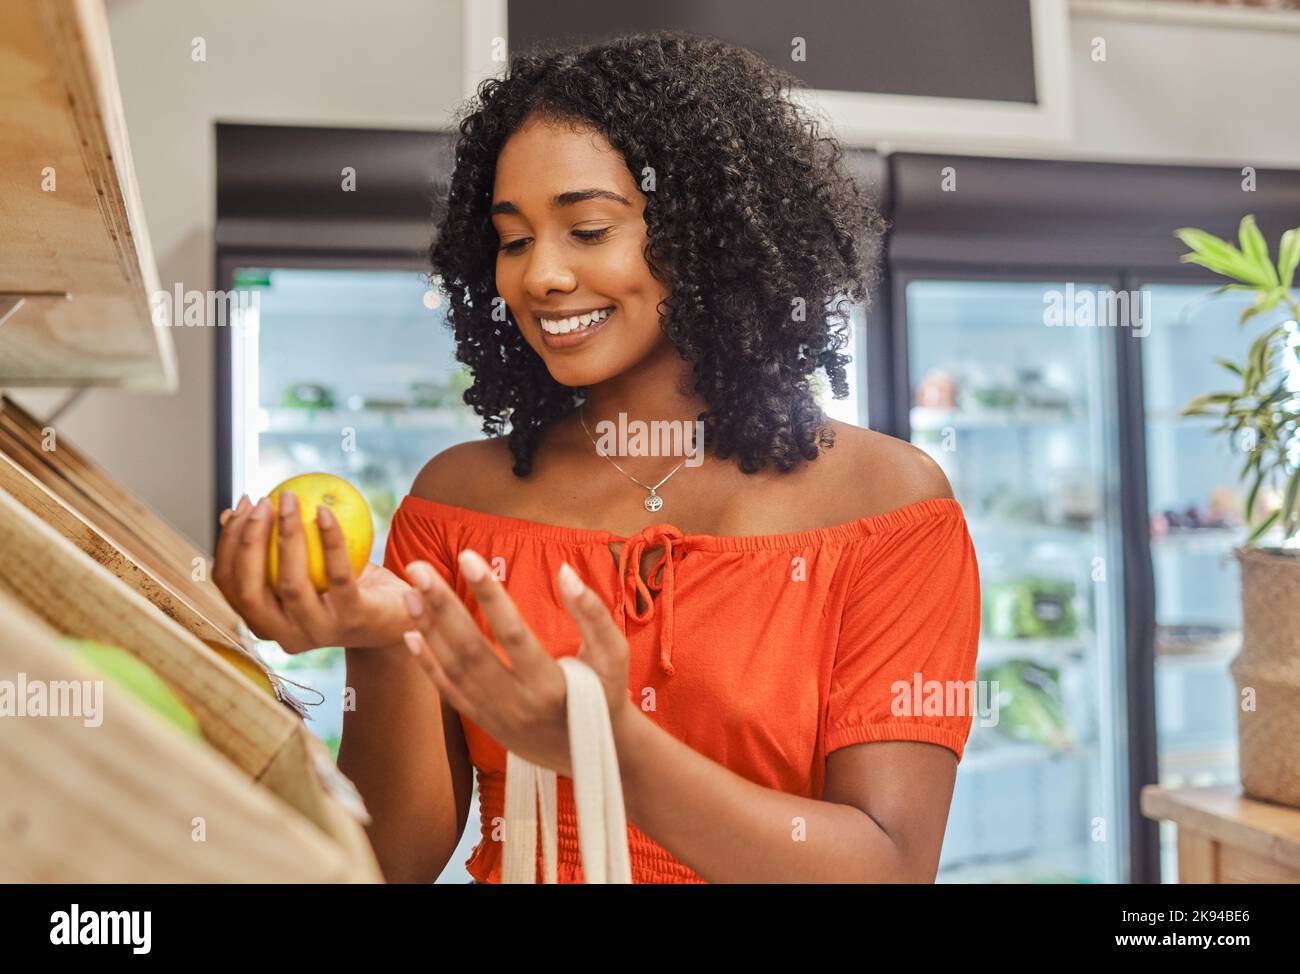 Lebensmittelgeschäft, Einkaufen und Orange mit einer schwarzen Kundin in einem Lebensmittelgeschäft für den Konsum. Lebensmittel, Supermarkt und Einzelhandel mit einer Verbraucherin Stockfoto